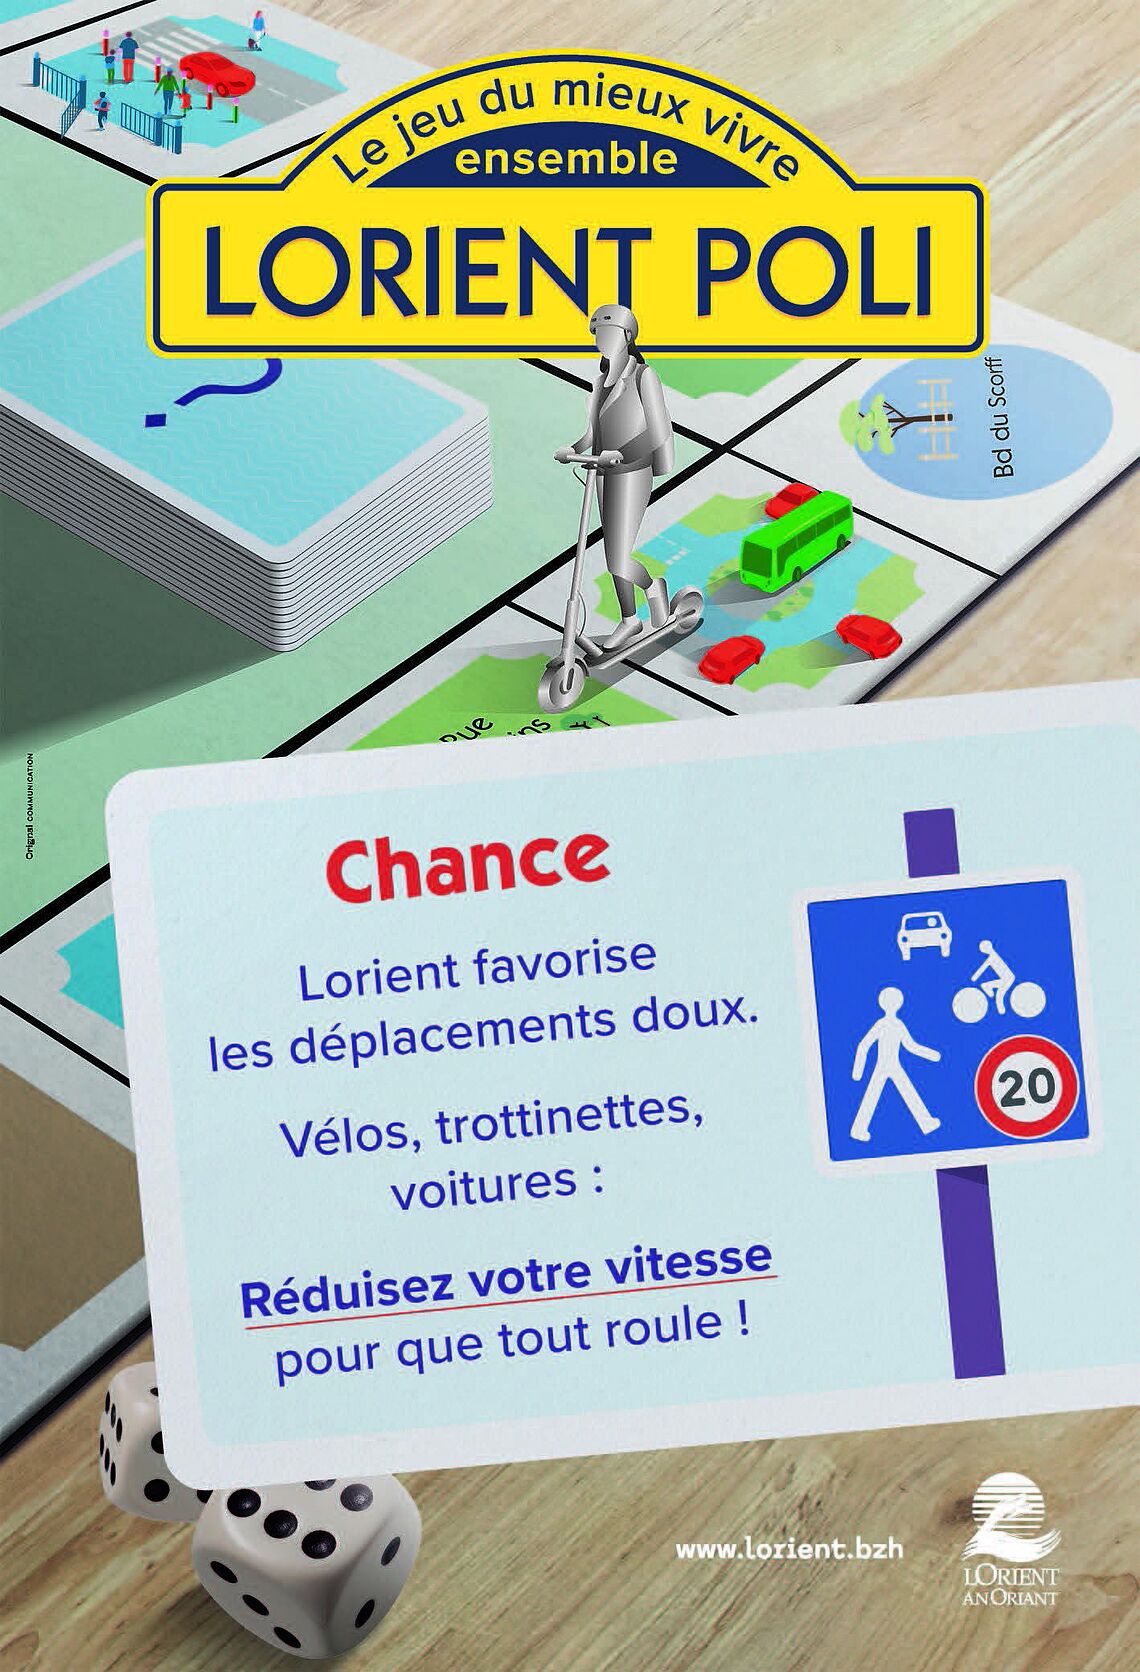 Lorient Poli - zones de rencontres, 20 Km/h pour tous ! 